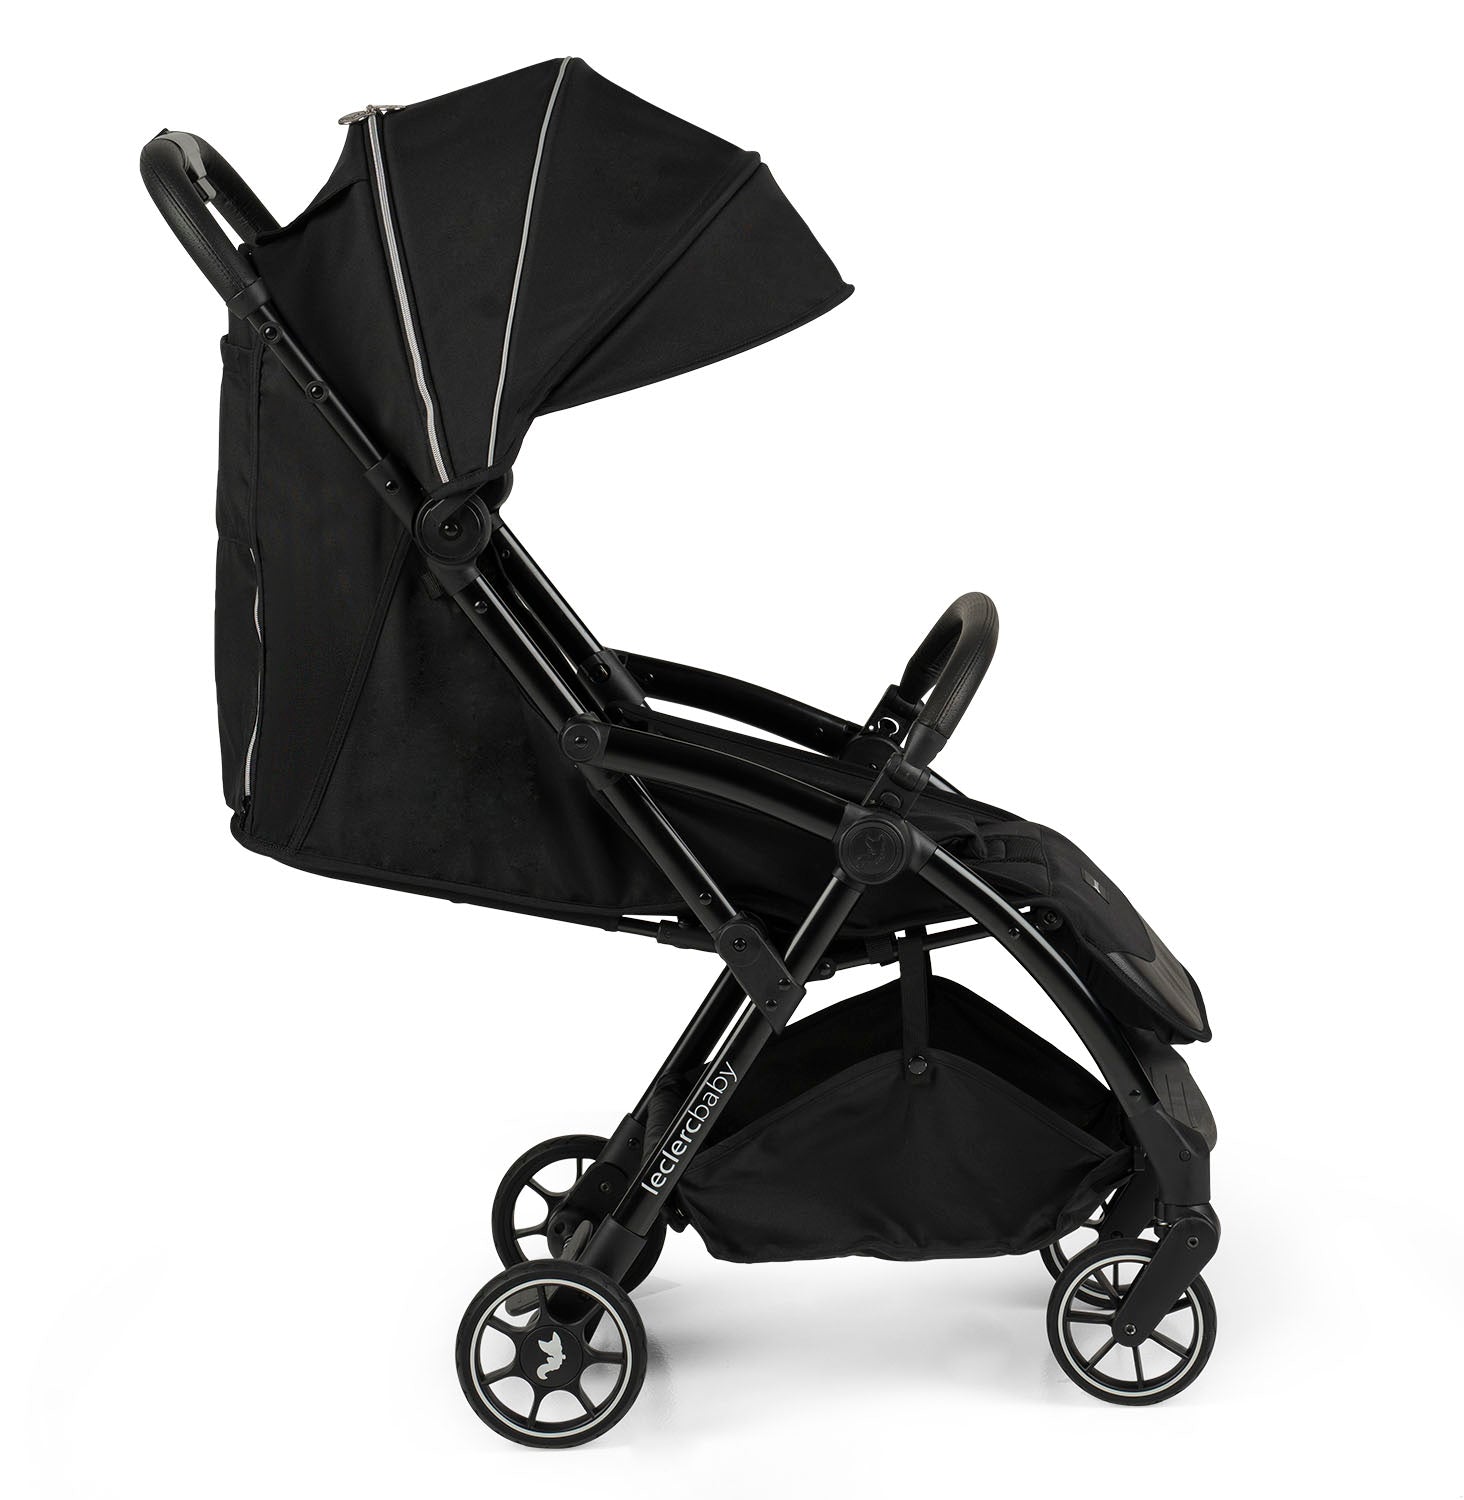 Influencer Air Twin Stroller Bundle : Violet Grey Stroller + Piano Black Stroller